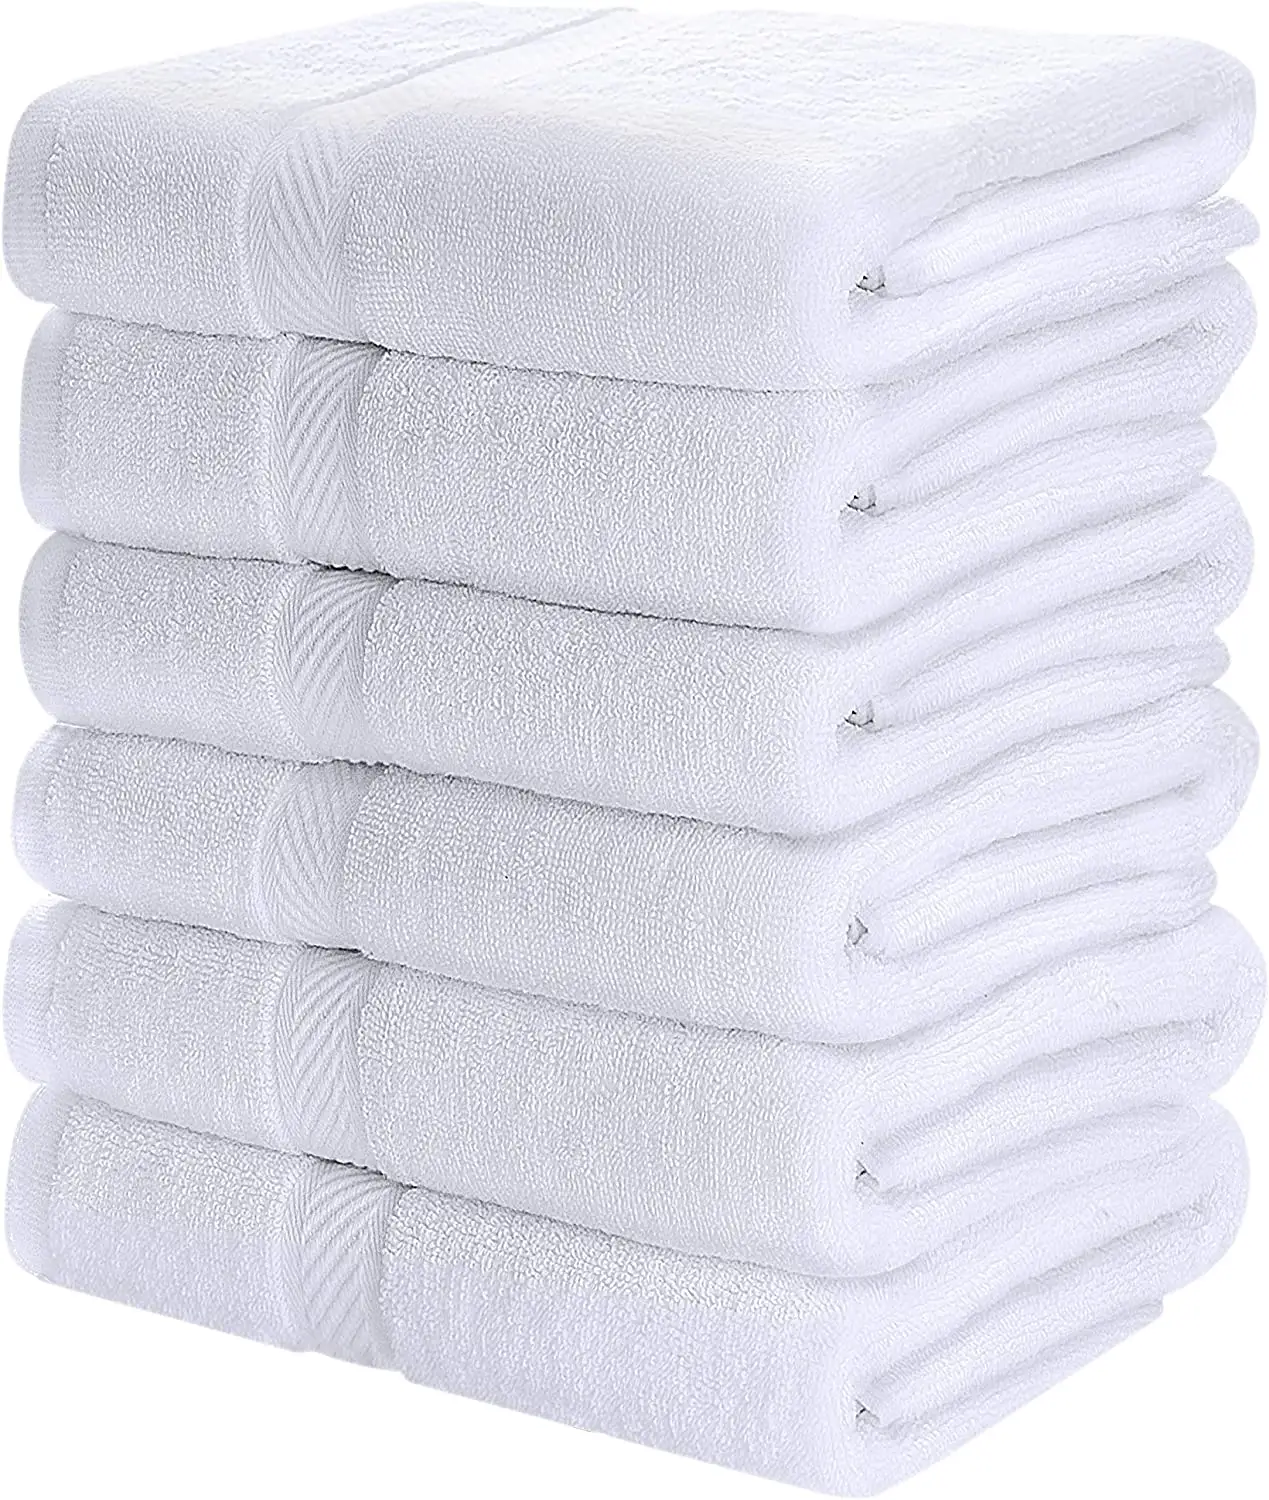 500 gramm 100% Bio-Baumwolle 70*140cm Badet uch Hotel POOL Weißes Handtuch